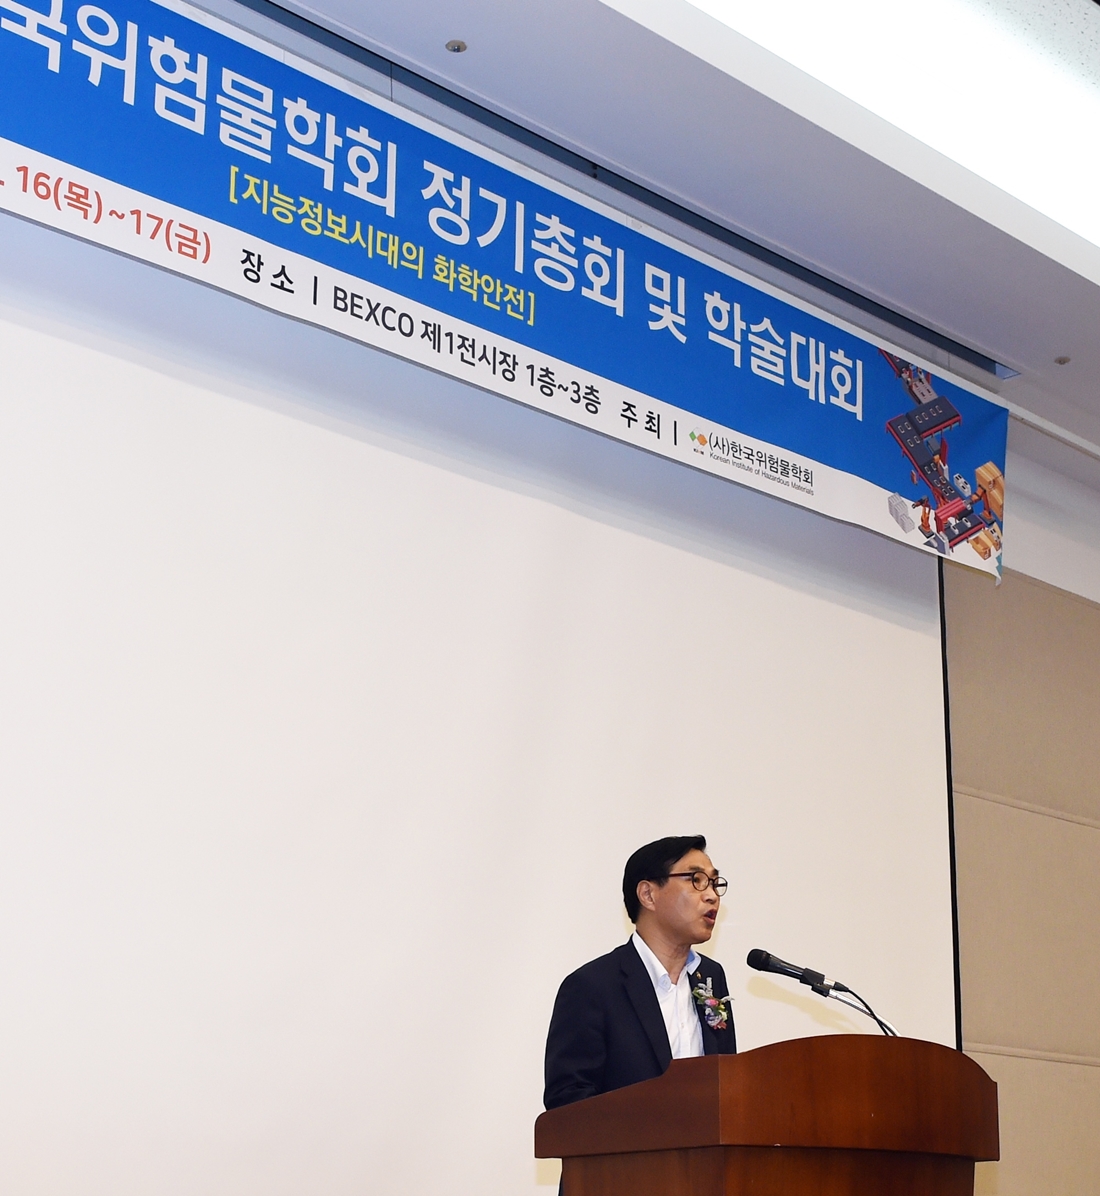 16일 부산 벡스코(BEXCO) 제1전시장에서 열린 『한국위험물학회 정기총회 및 학술대회』에 참석한 류희인 재난안전관리본부장이 축사를 하고 있다.